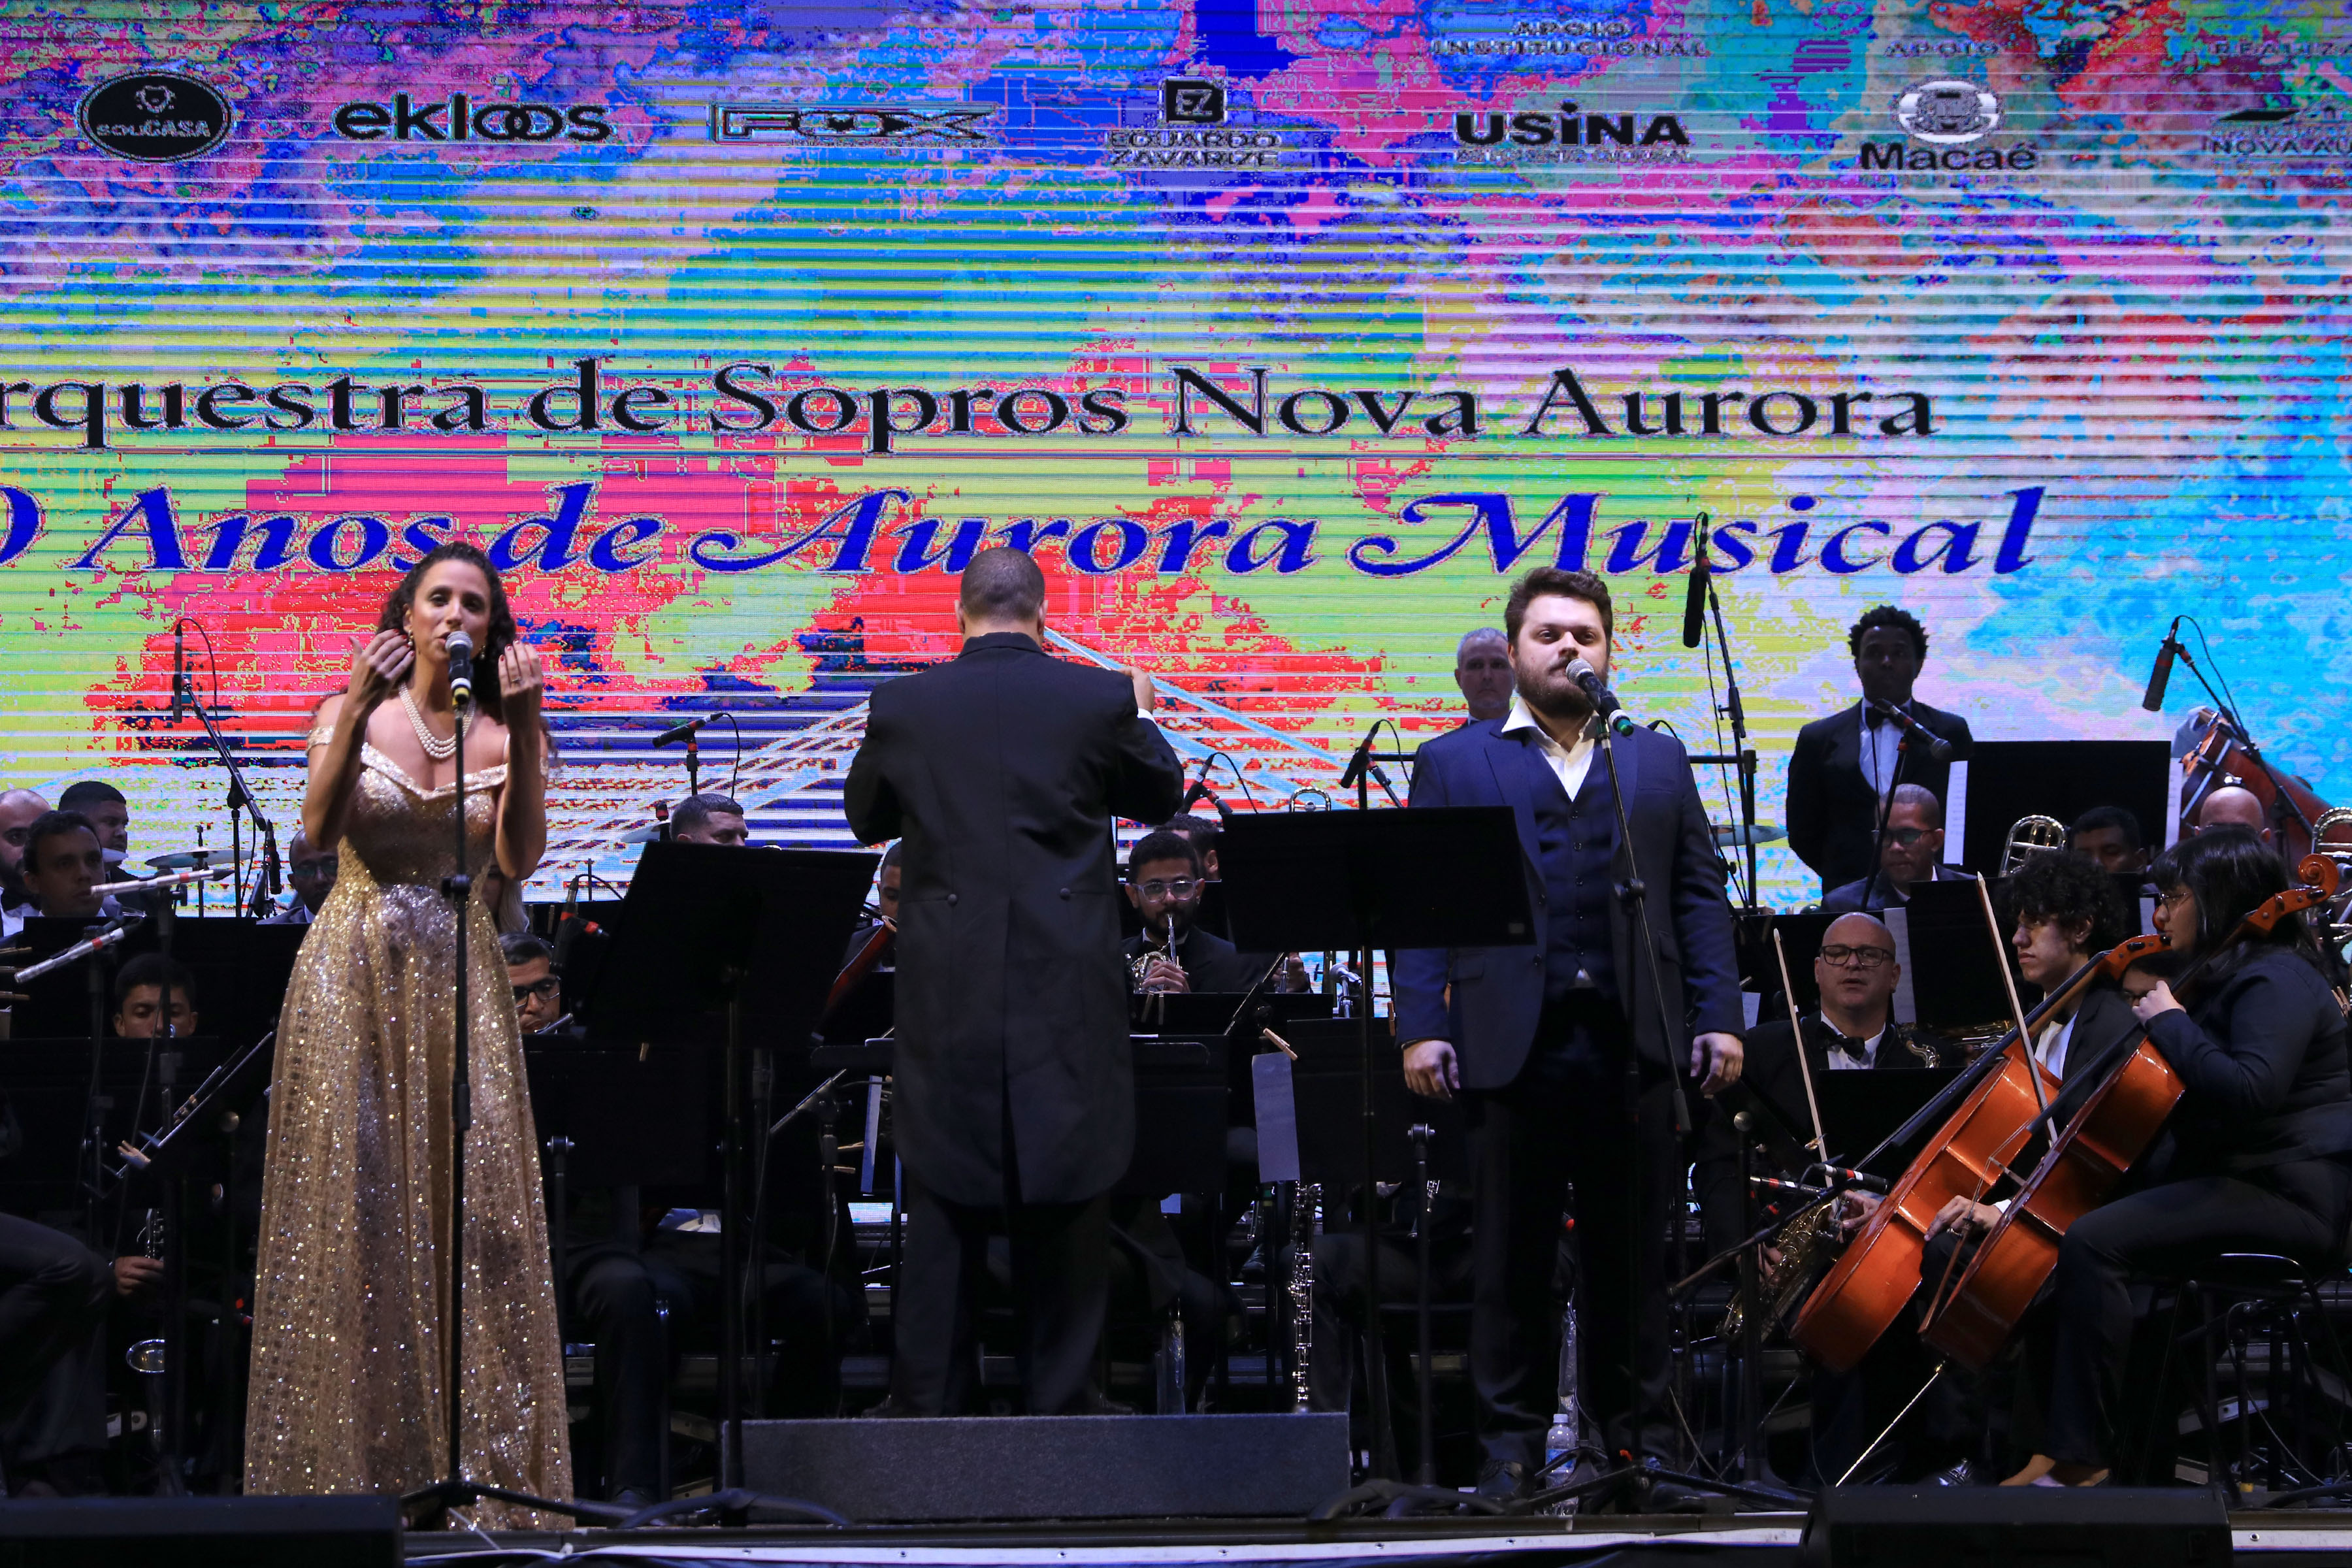 Fundada em 8 de junho de 1873, a Orquestra de Sopros Nova Aurora atualmente é composta por 62 músicos